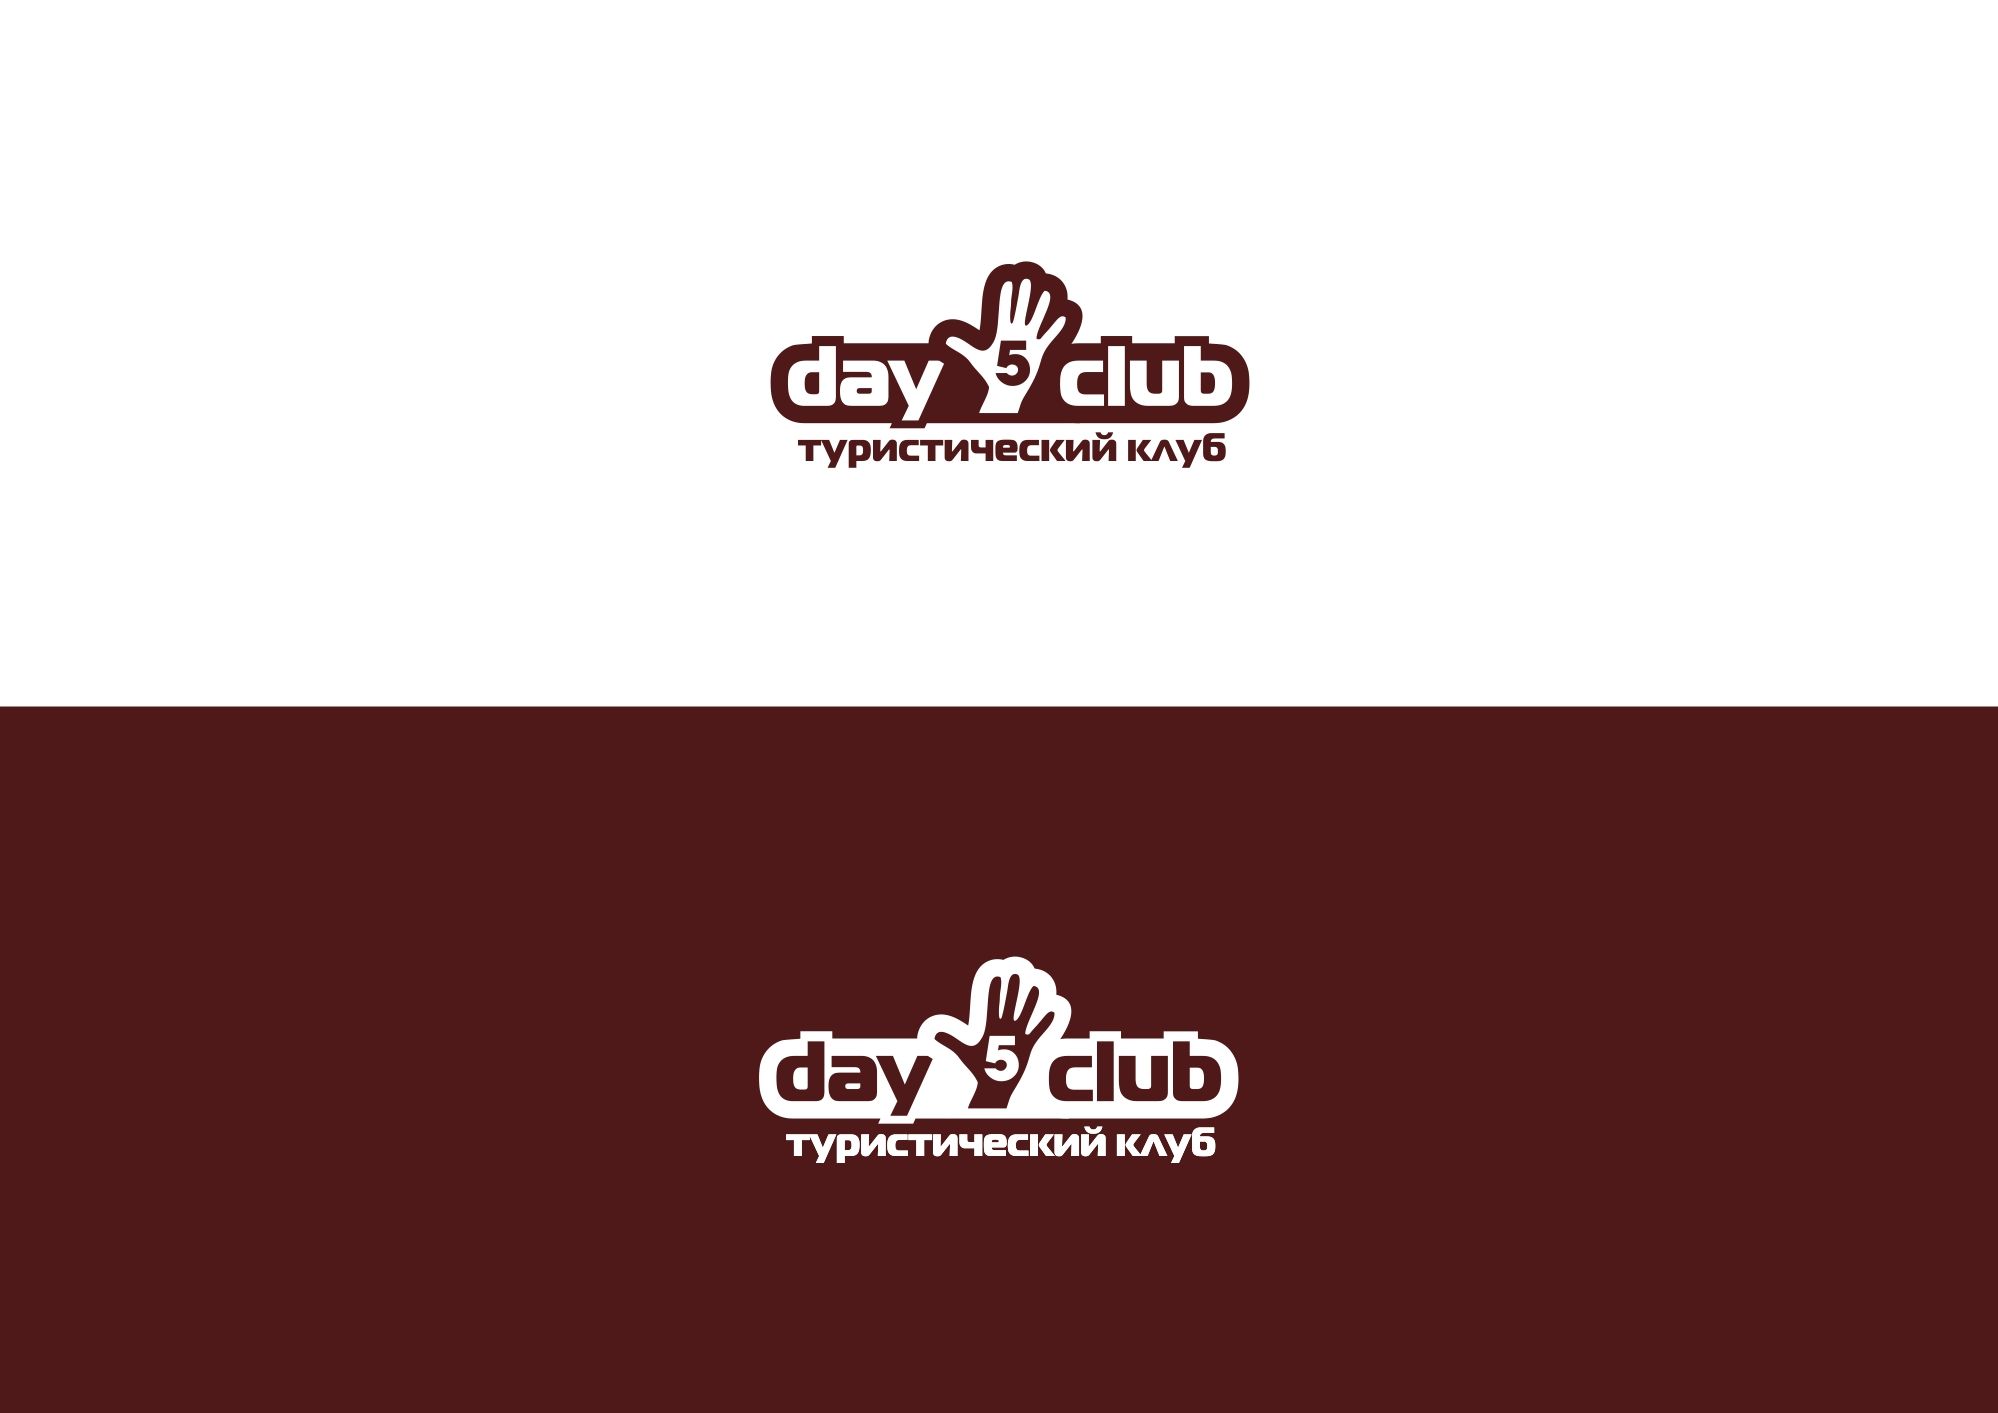 Логотип для Дай 5 Клуб (day5club) - дизайнер lum1x94